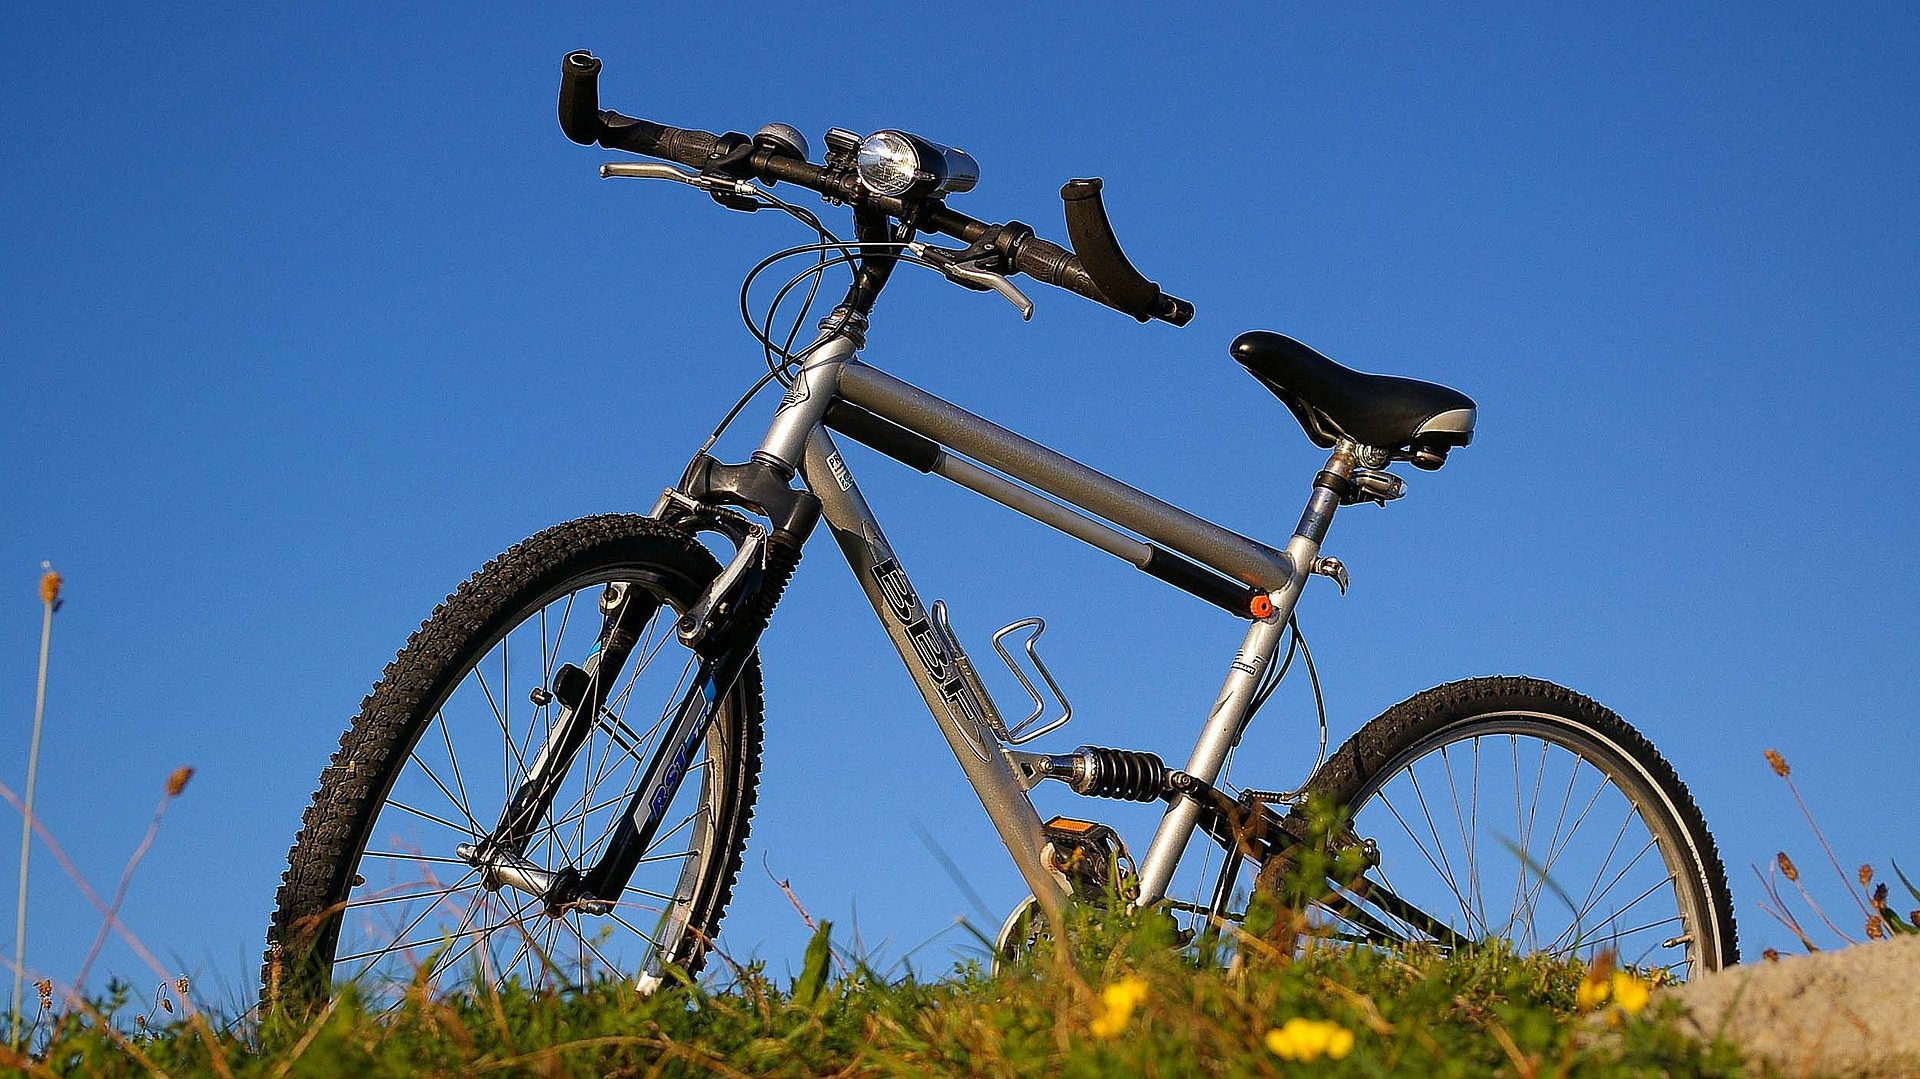 Outdoor-Freizeitangebot in Franken - Mountain-Bike auf einem Hügel unter blauem Himmel